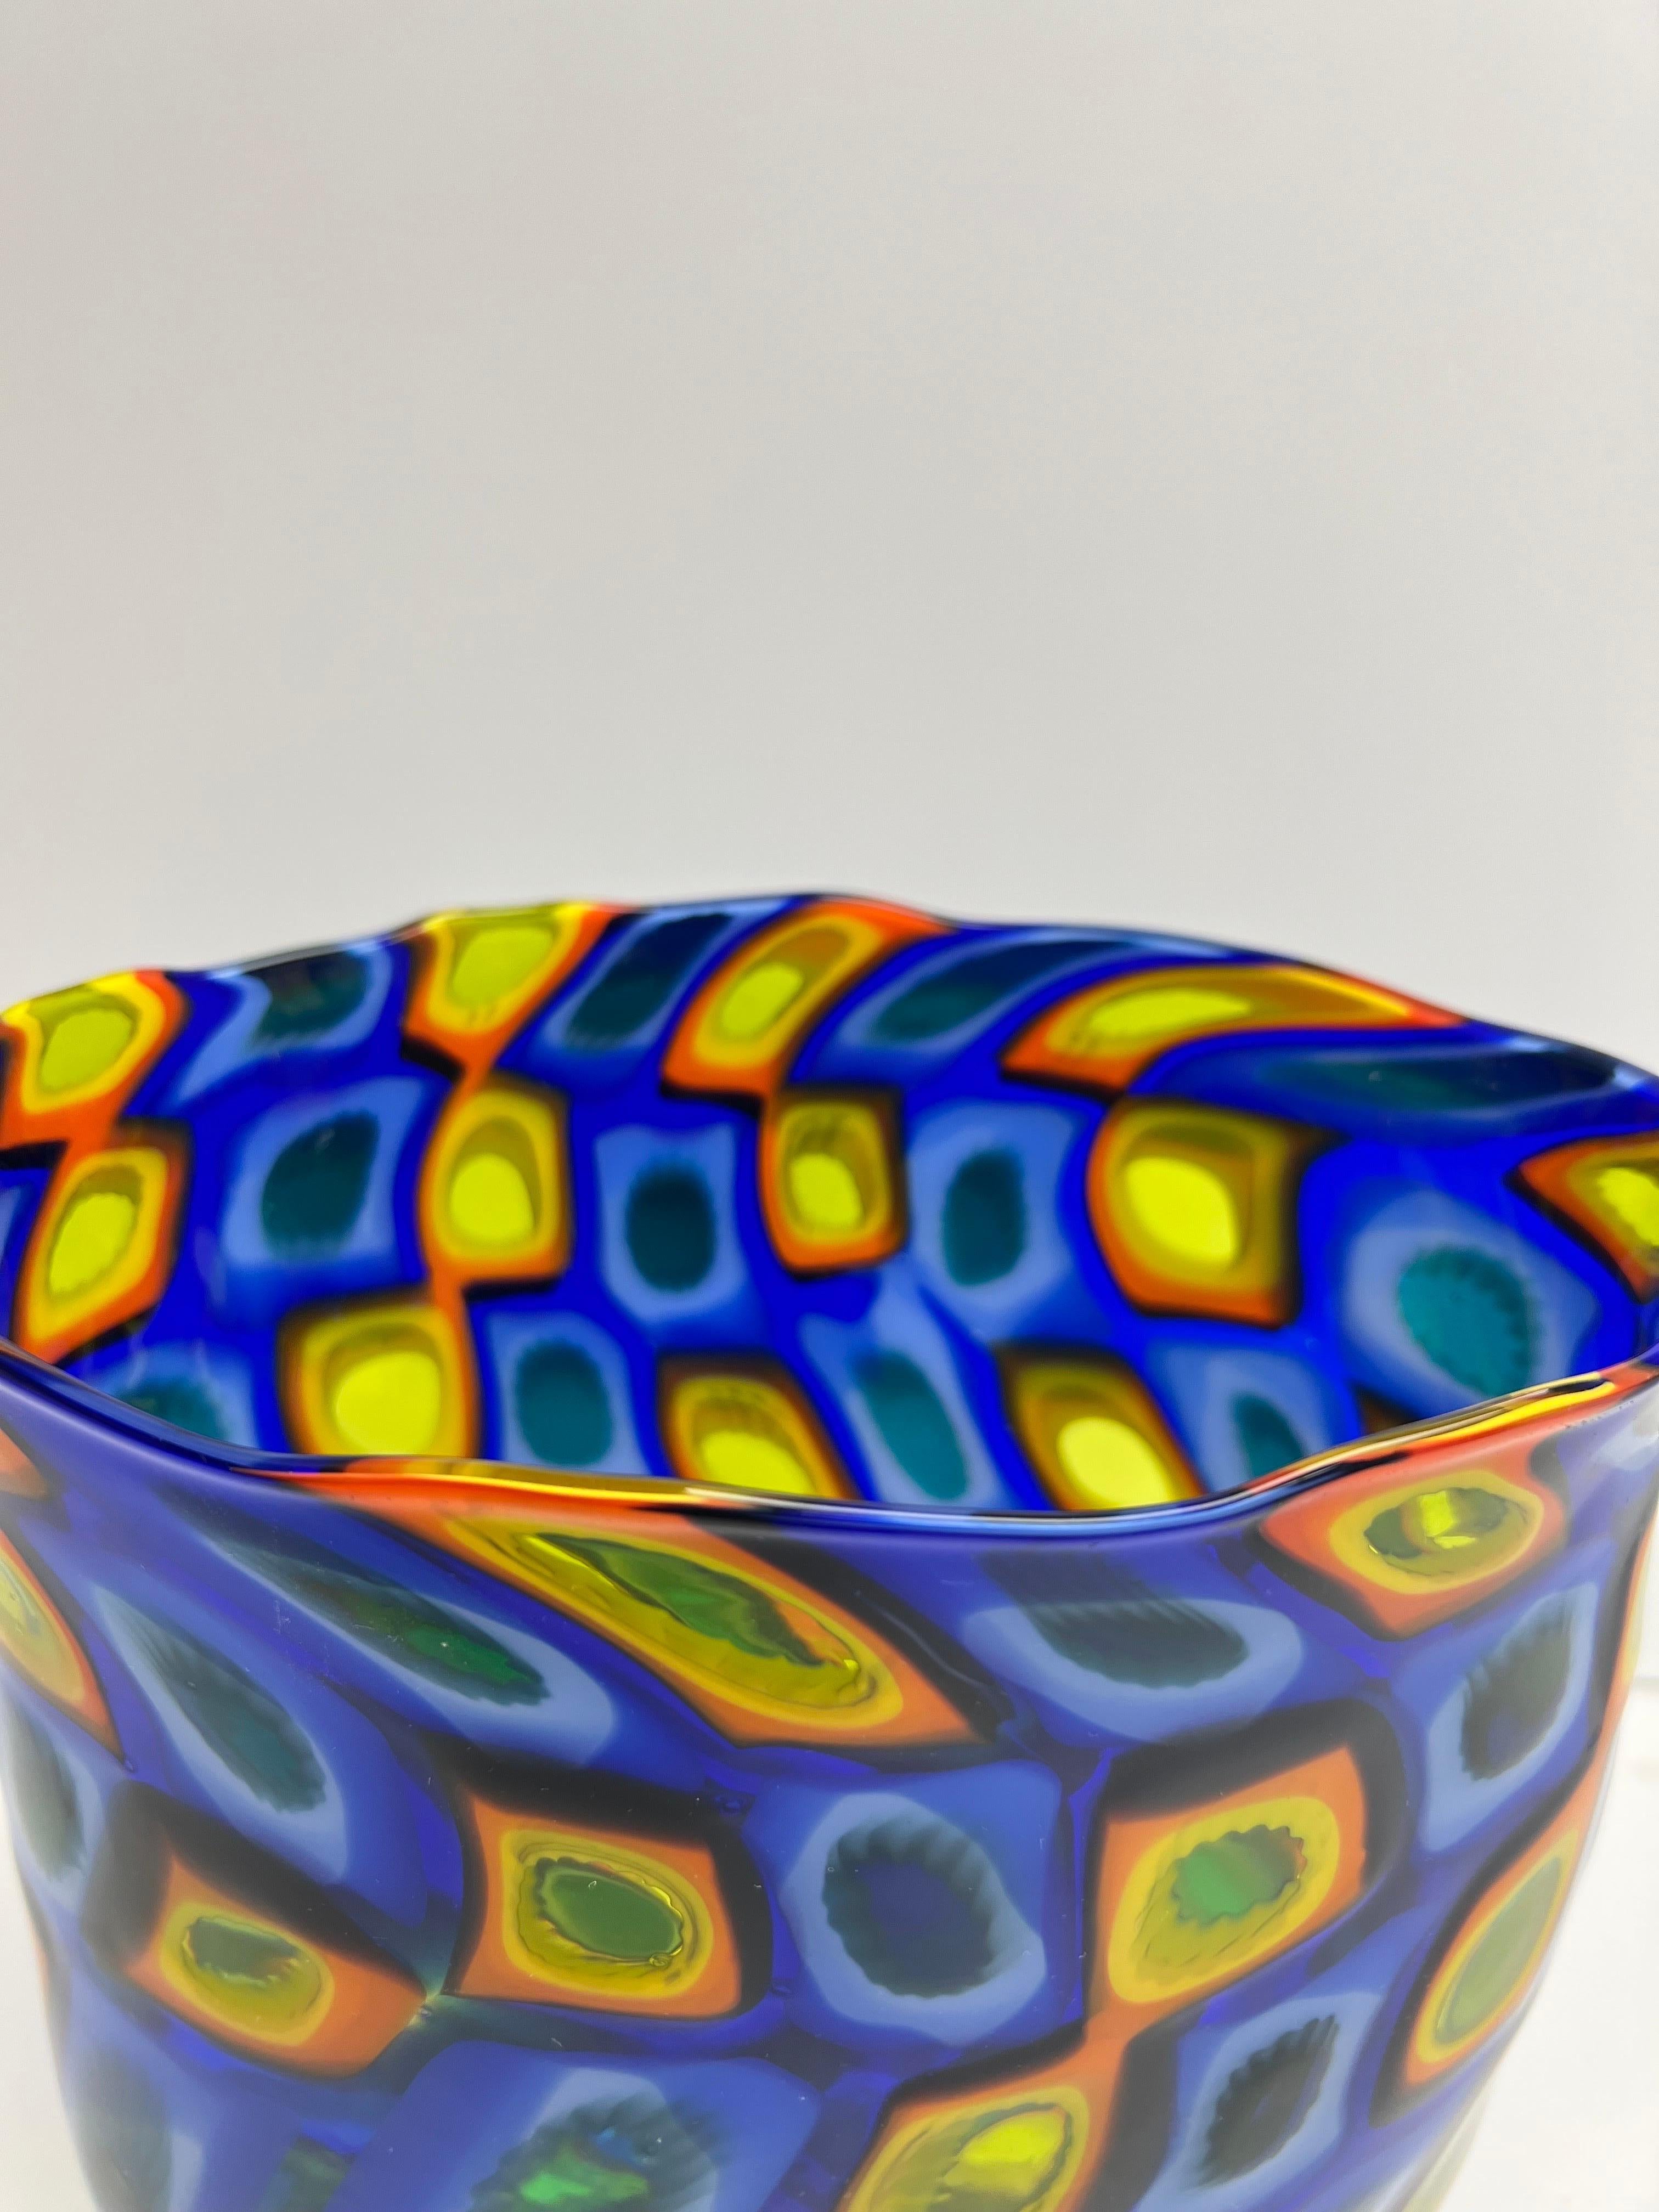 Contemporary Jeremy Popelka Art Glass Murrini Vase 2001 For Sale